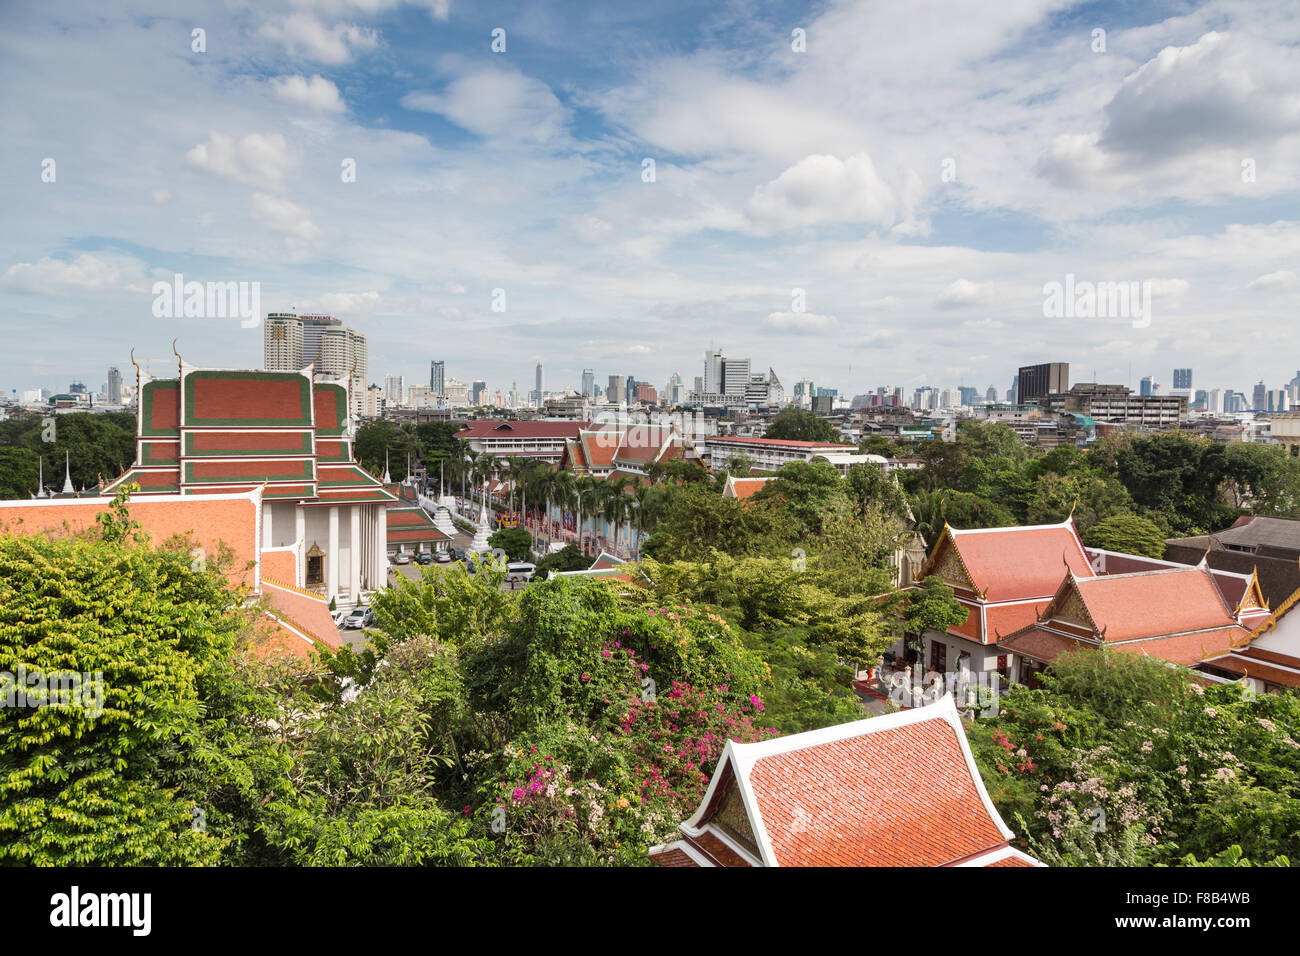 Mischung aus traditionellen buddhistischen Tempeln und modernen Gebäuden im Hintergrund in Thailand Hauptstadt Bangkok Stadtbild Stockfoto